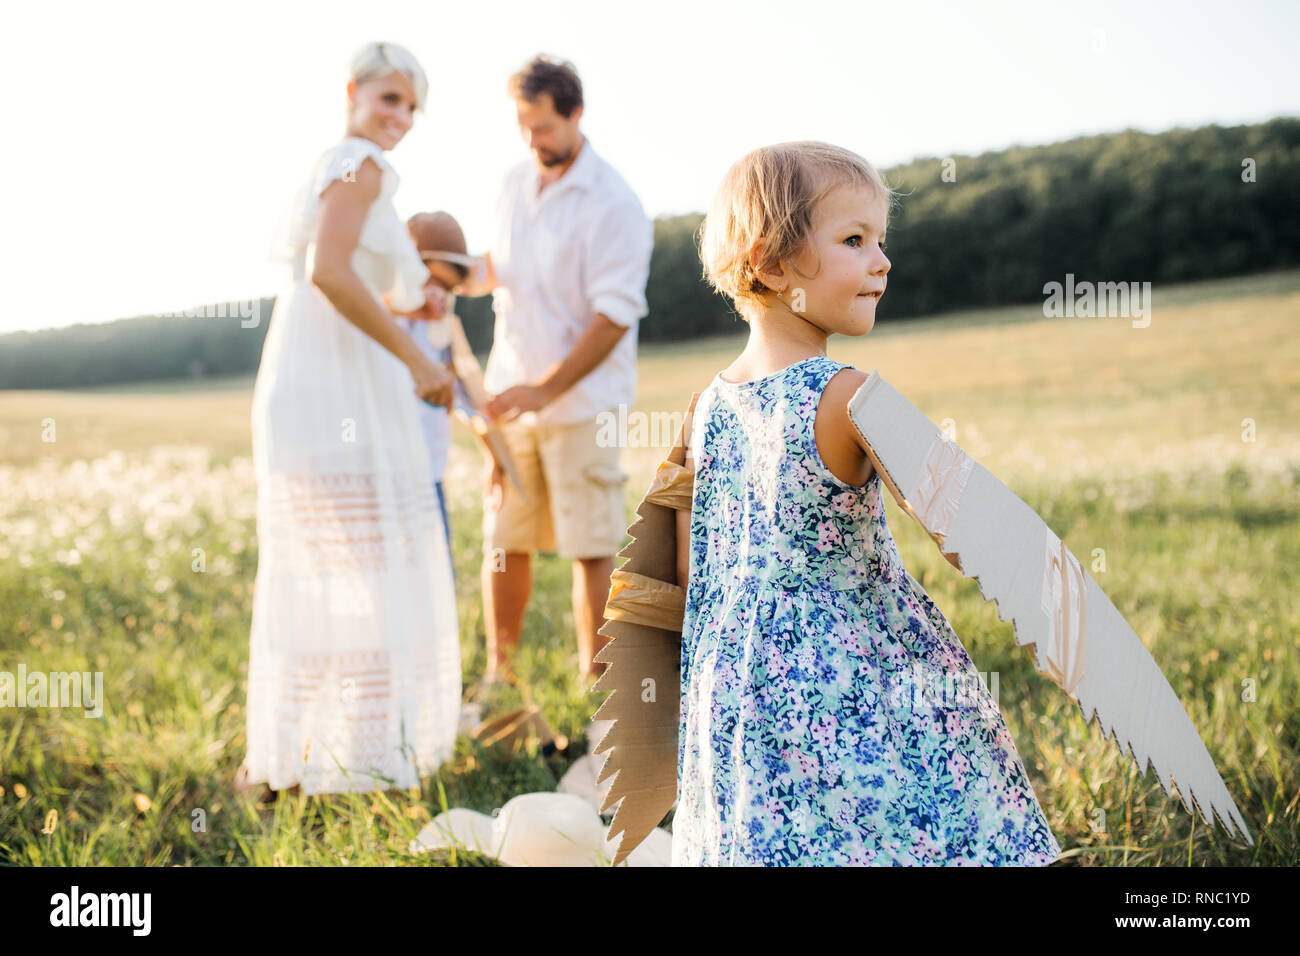 Junge Familien mit kleinen Kindern das Spielen auf einer Wiese in der Natur. Stockfoto